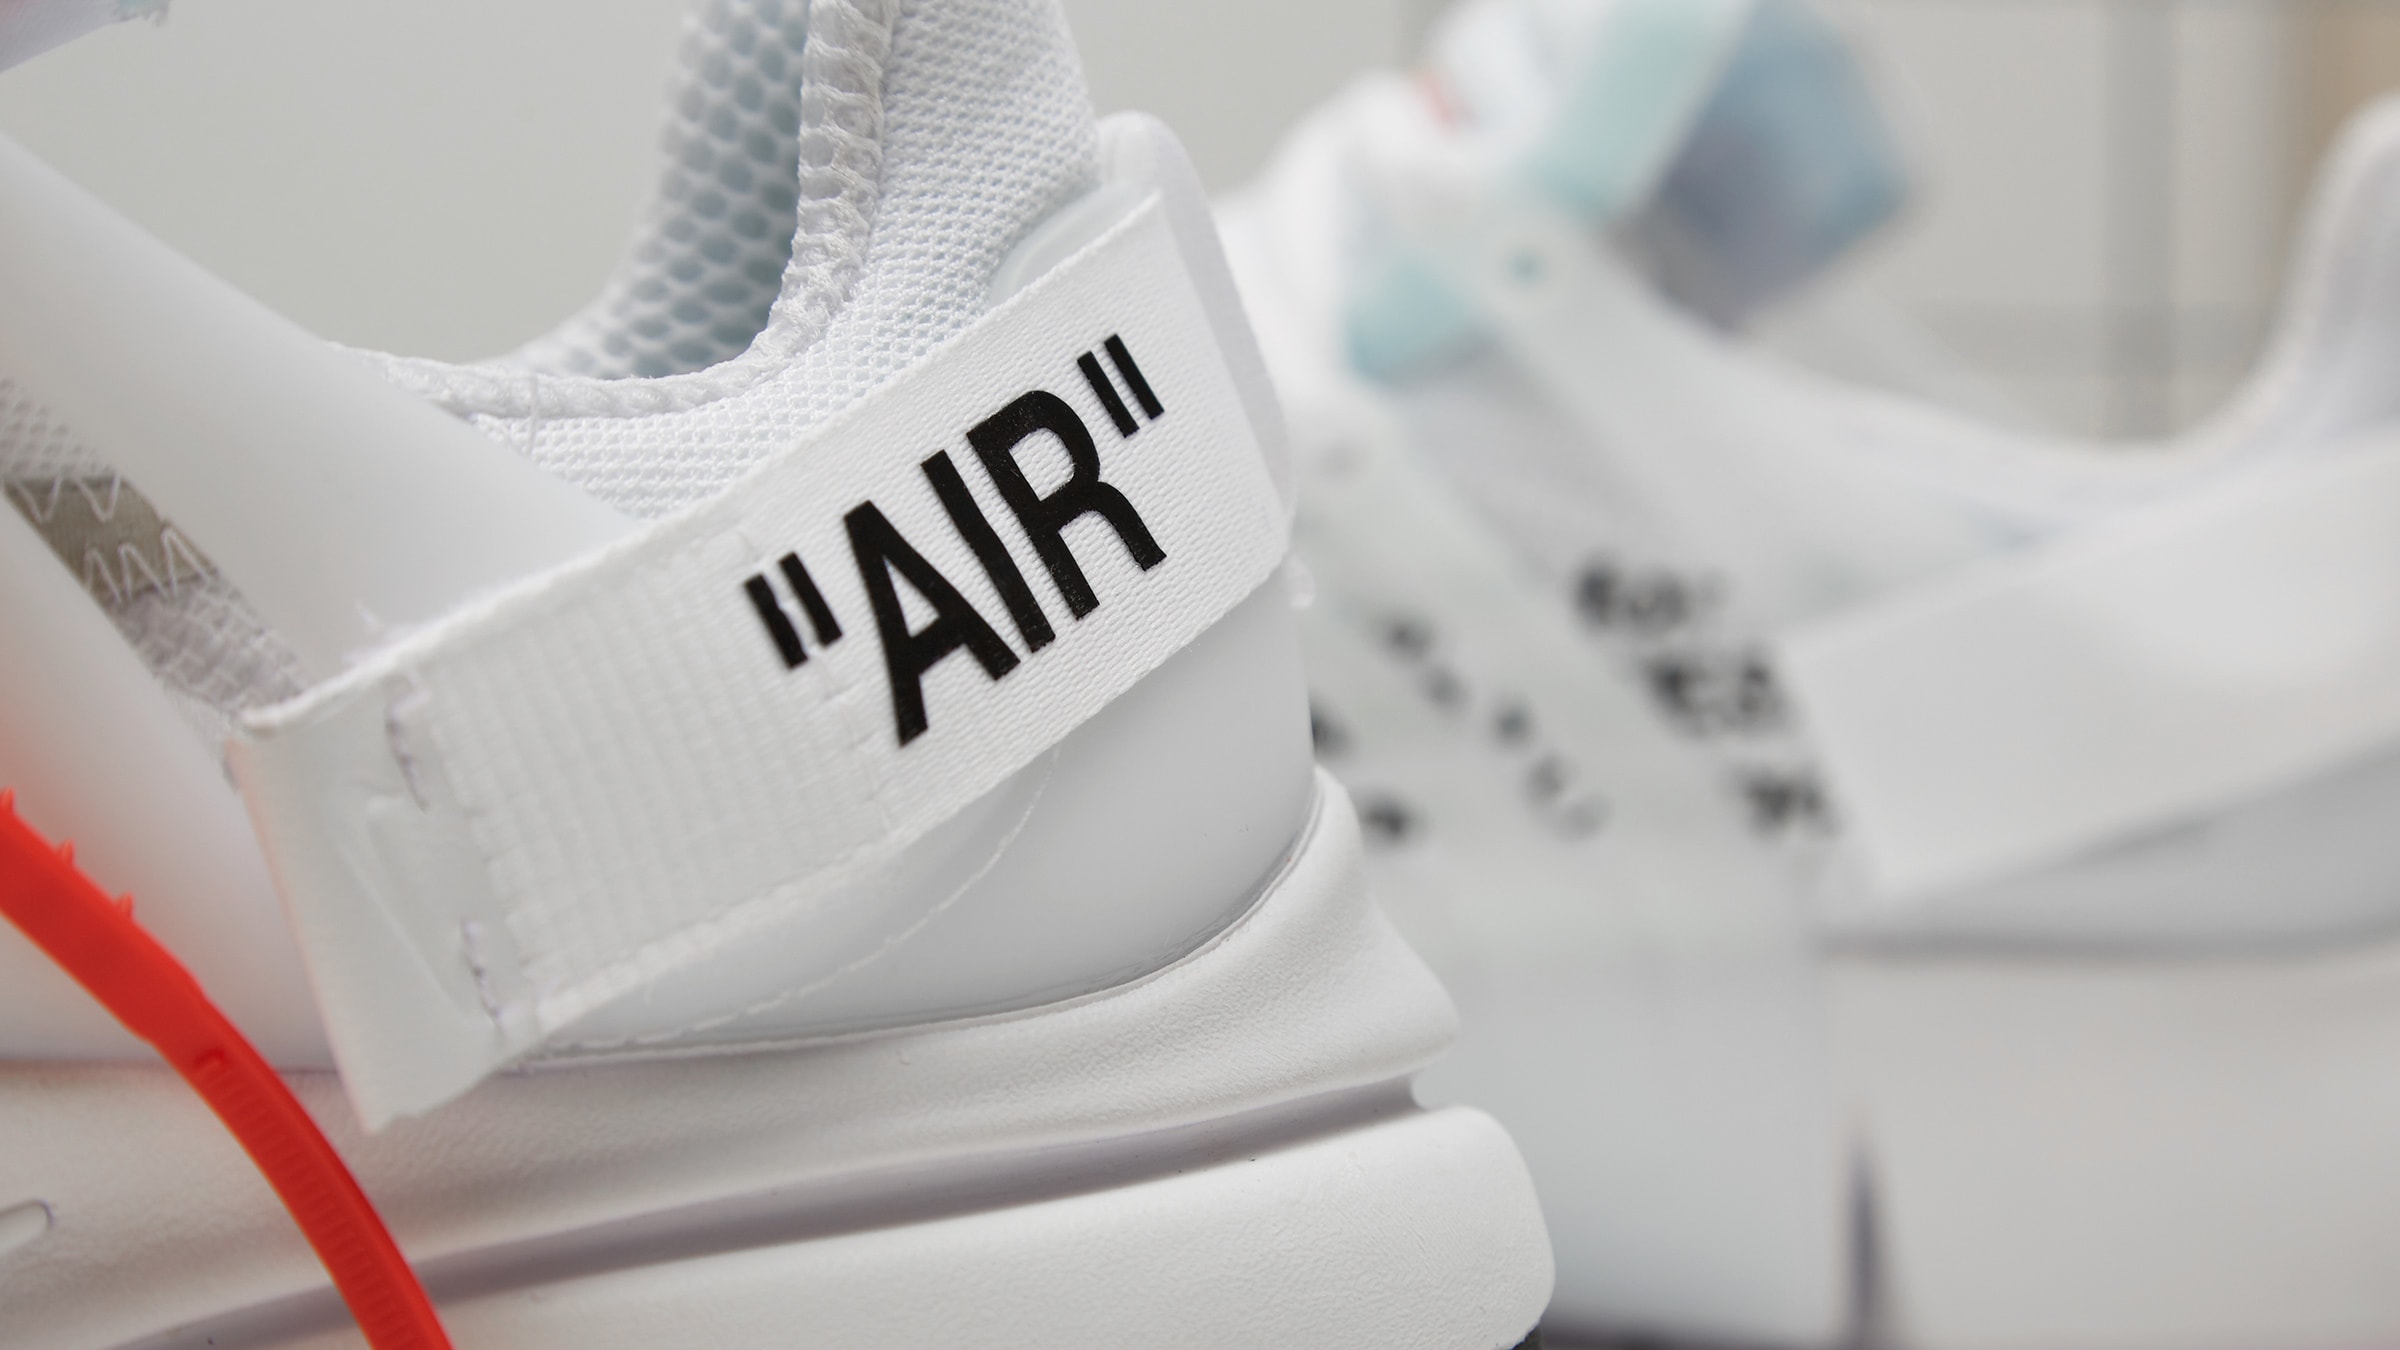 Nike x Off-White Air Presto (White & Black Cone) | END. Launches